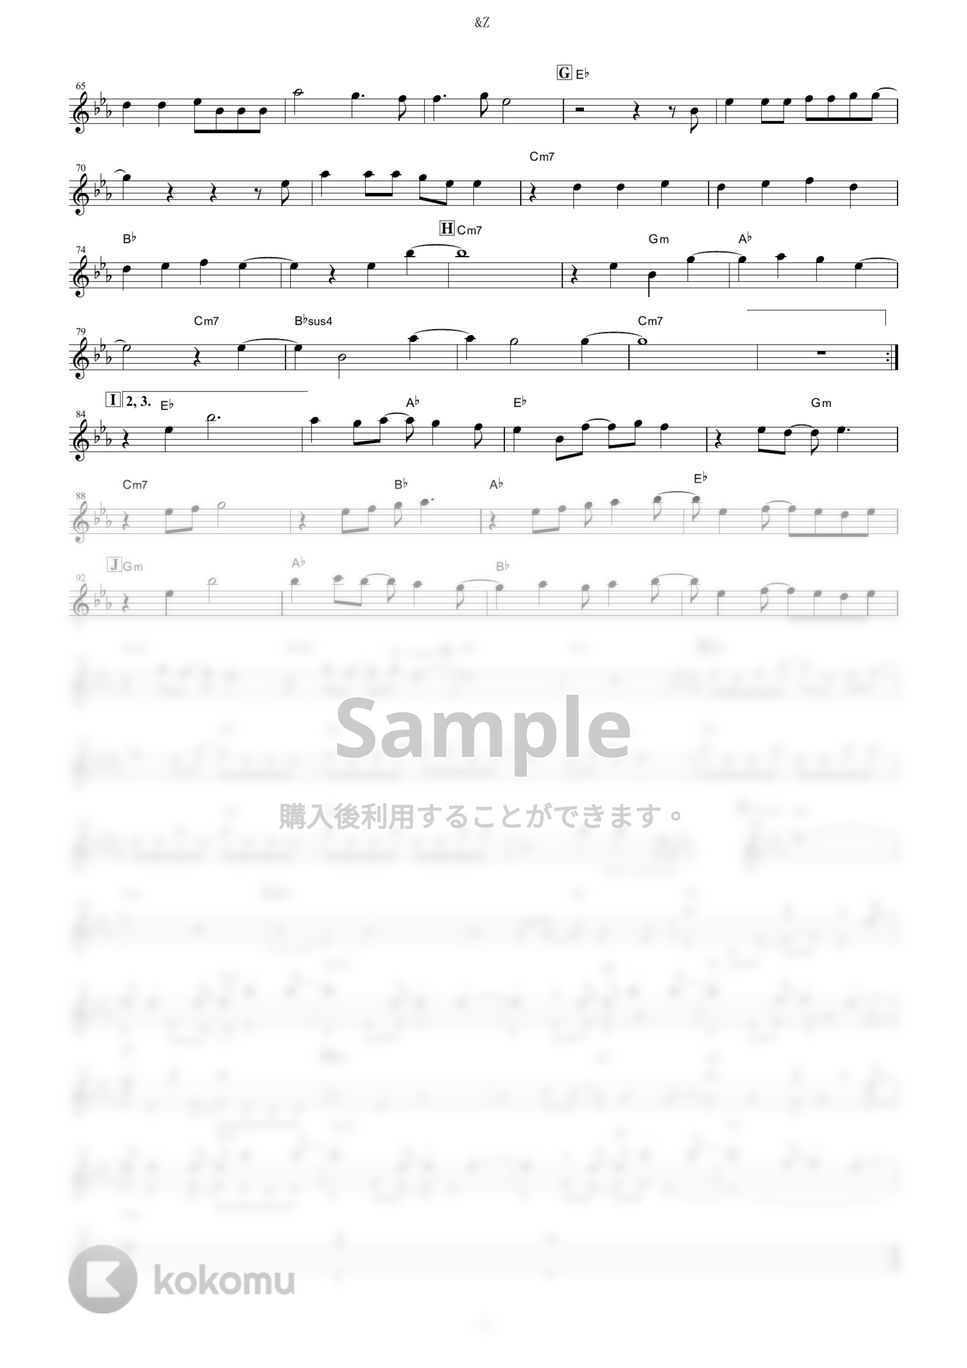 SawanoHiroyuki[nZk]:mizuki - &Z (『アルドノア・ゼロ』 / in C) by muta-sax